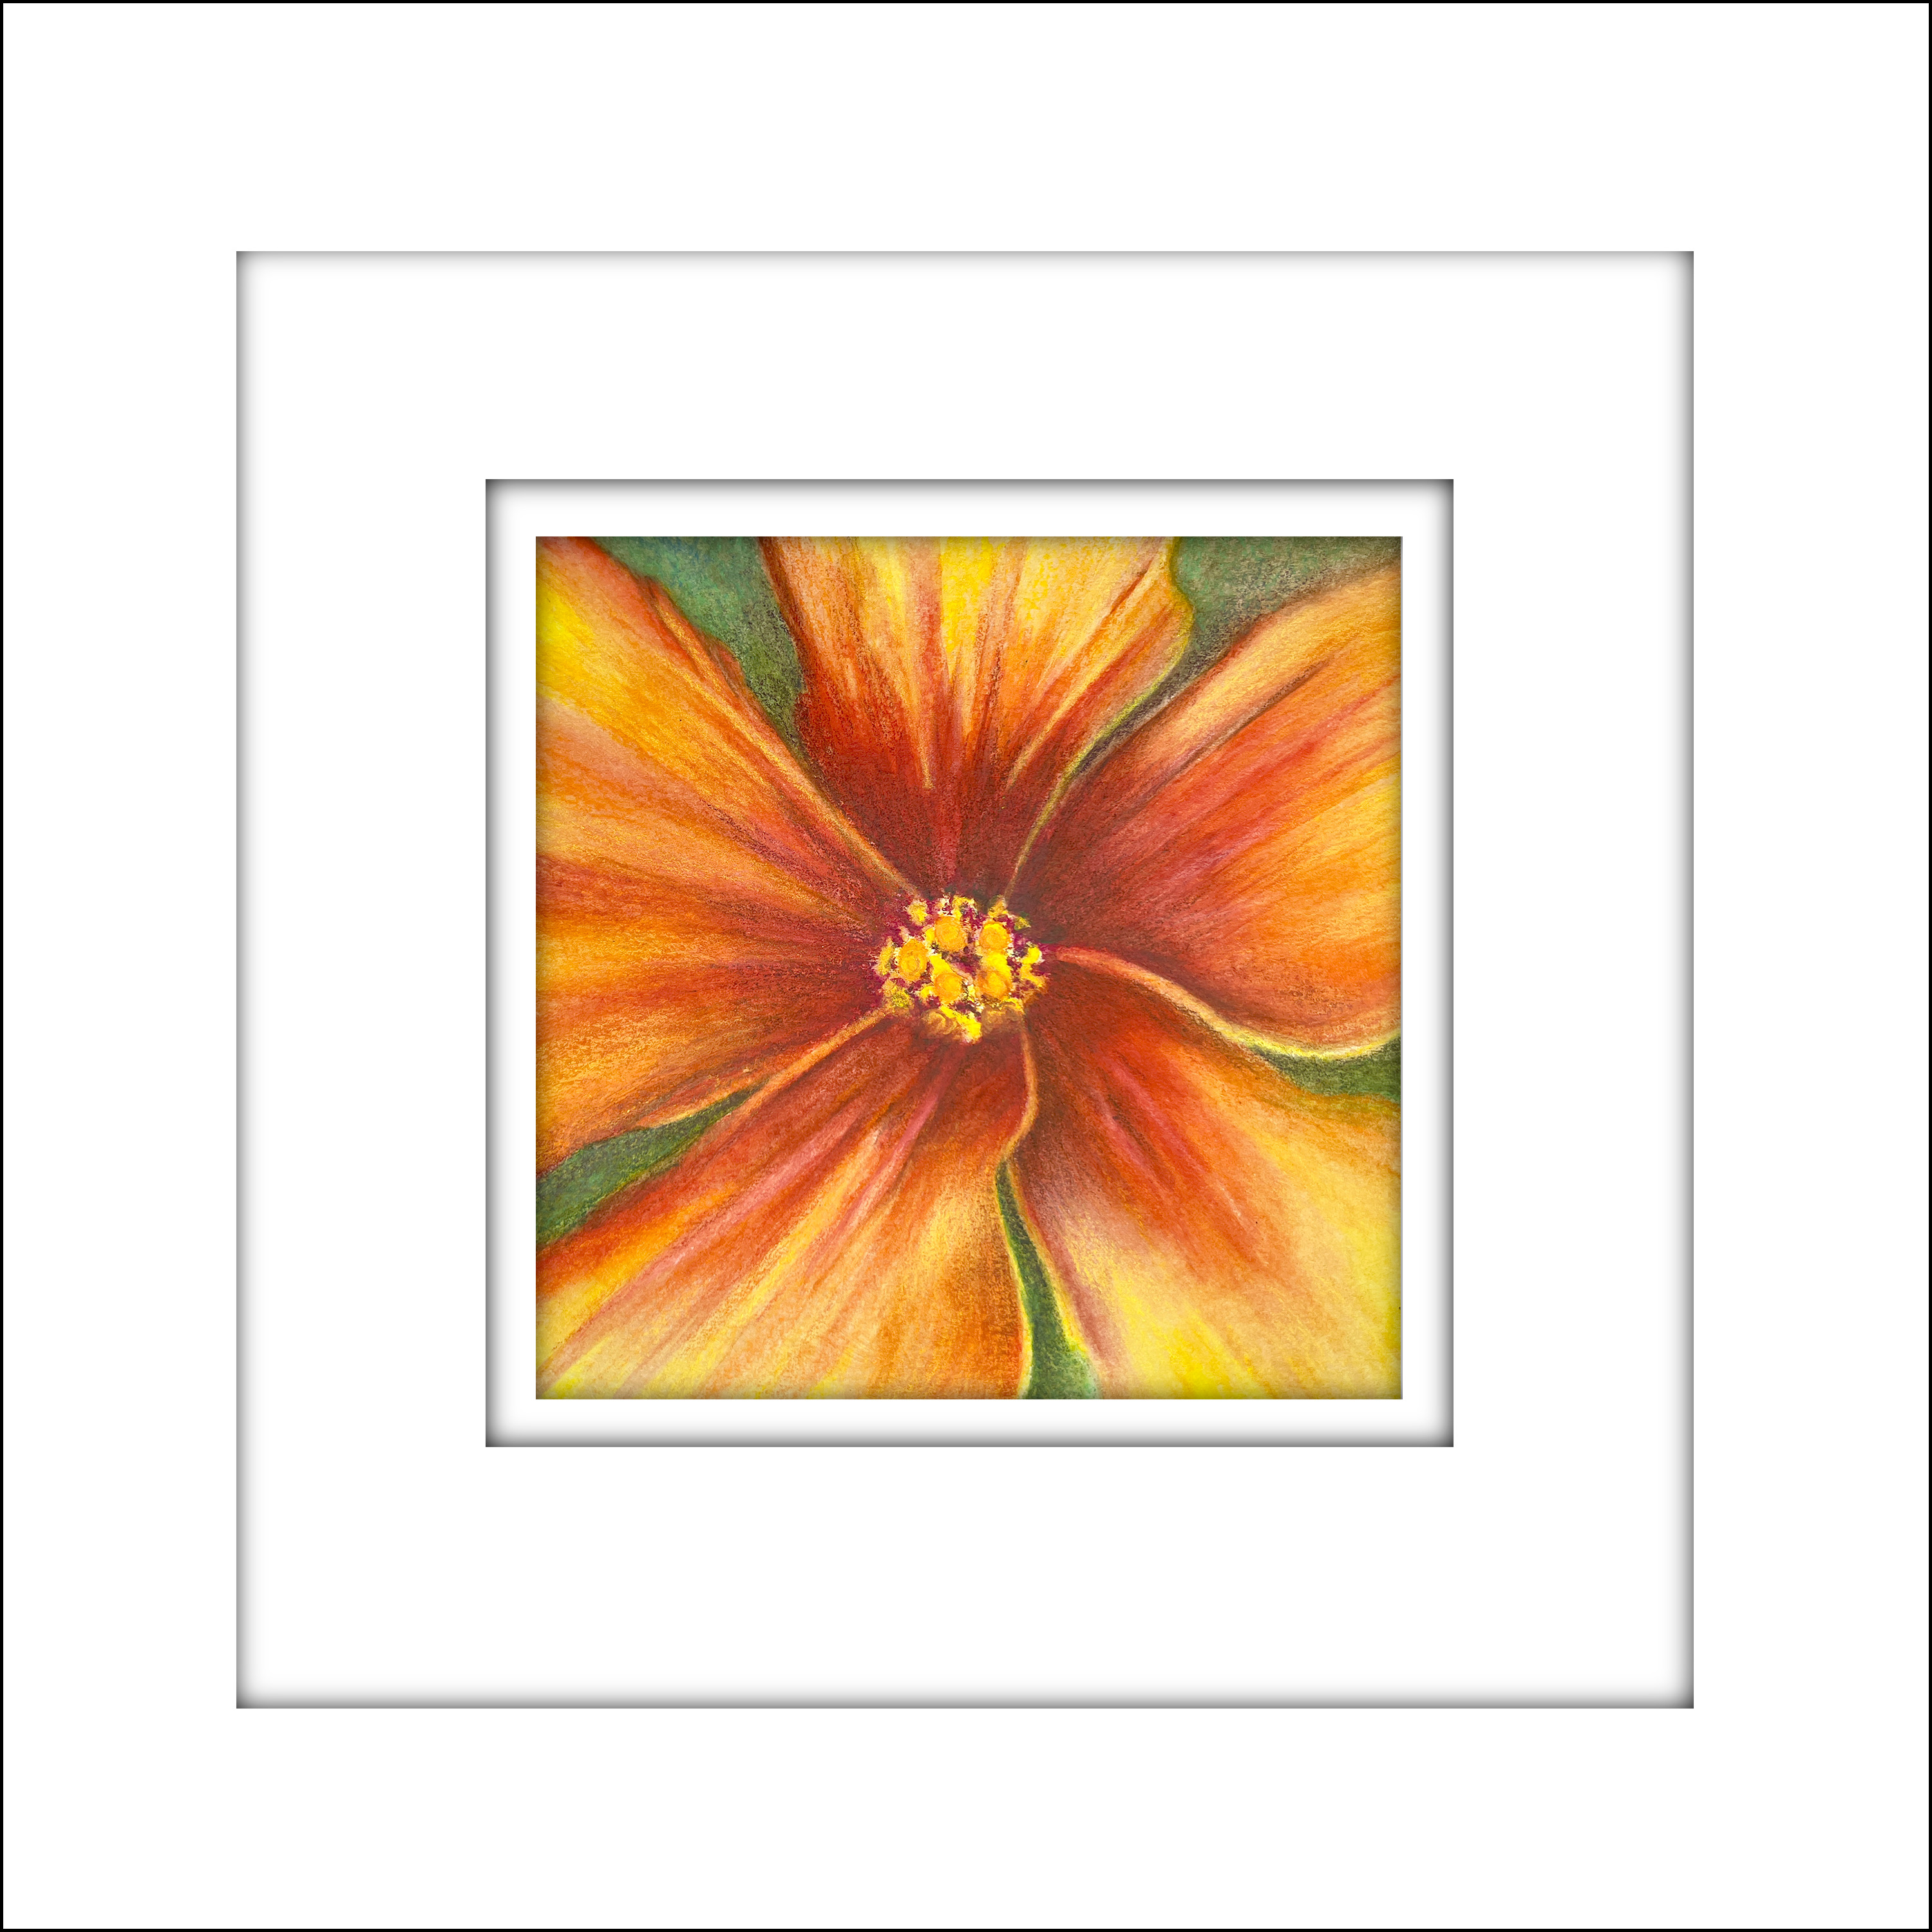 221203 orange hibiscus single centered framed owoojt